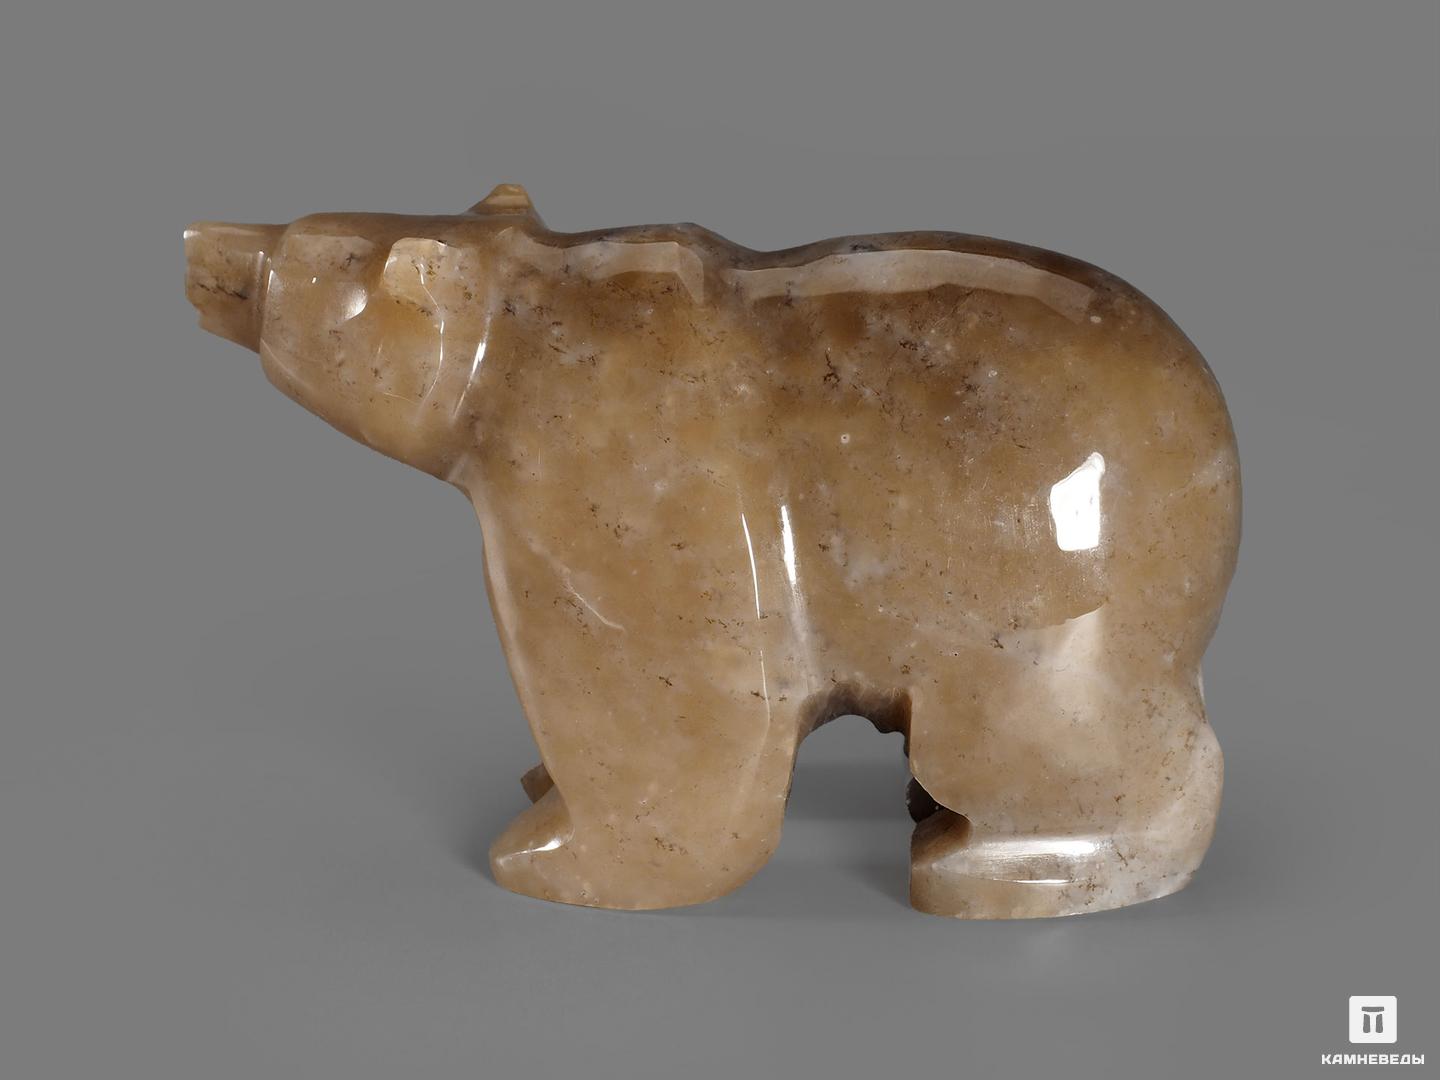 Медведь из мохового нефрита, 7,3х4,4х2,9 см, 19591, фото 2